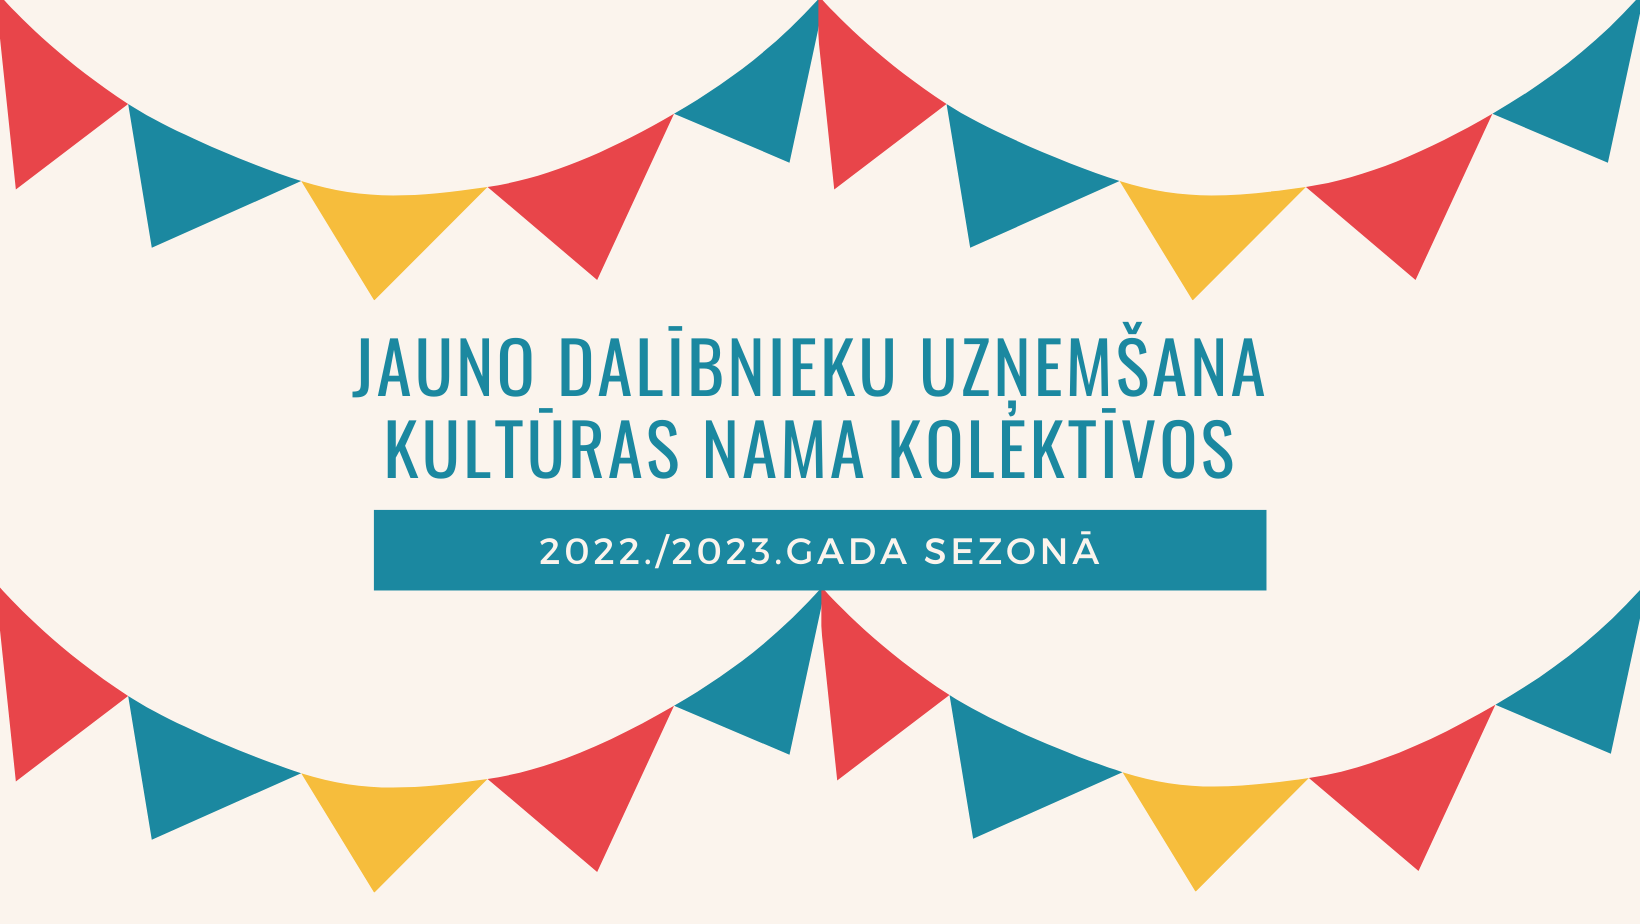 JAUNO DALĪBNIEKU UZŅEMŠANA KULTŪRAS NAMA KOLEKTĪVOS 2022./2023.GADA SEZONĀ